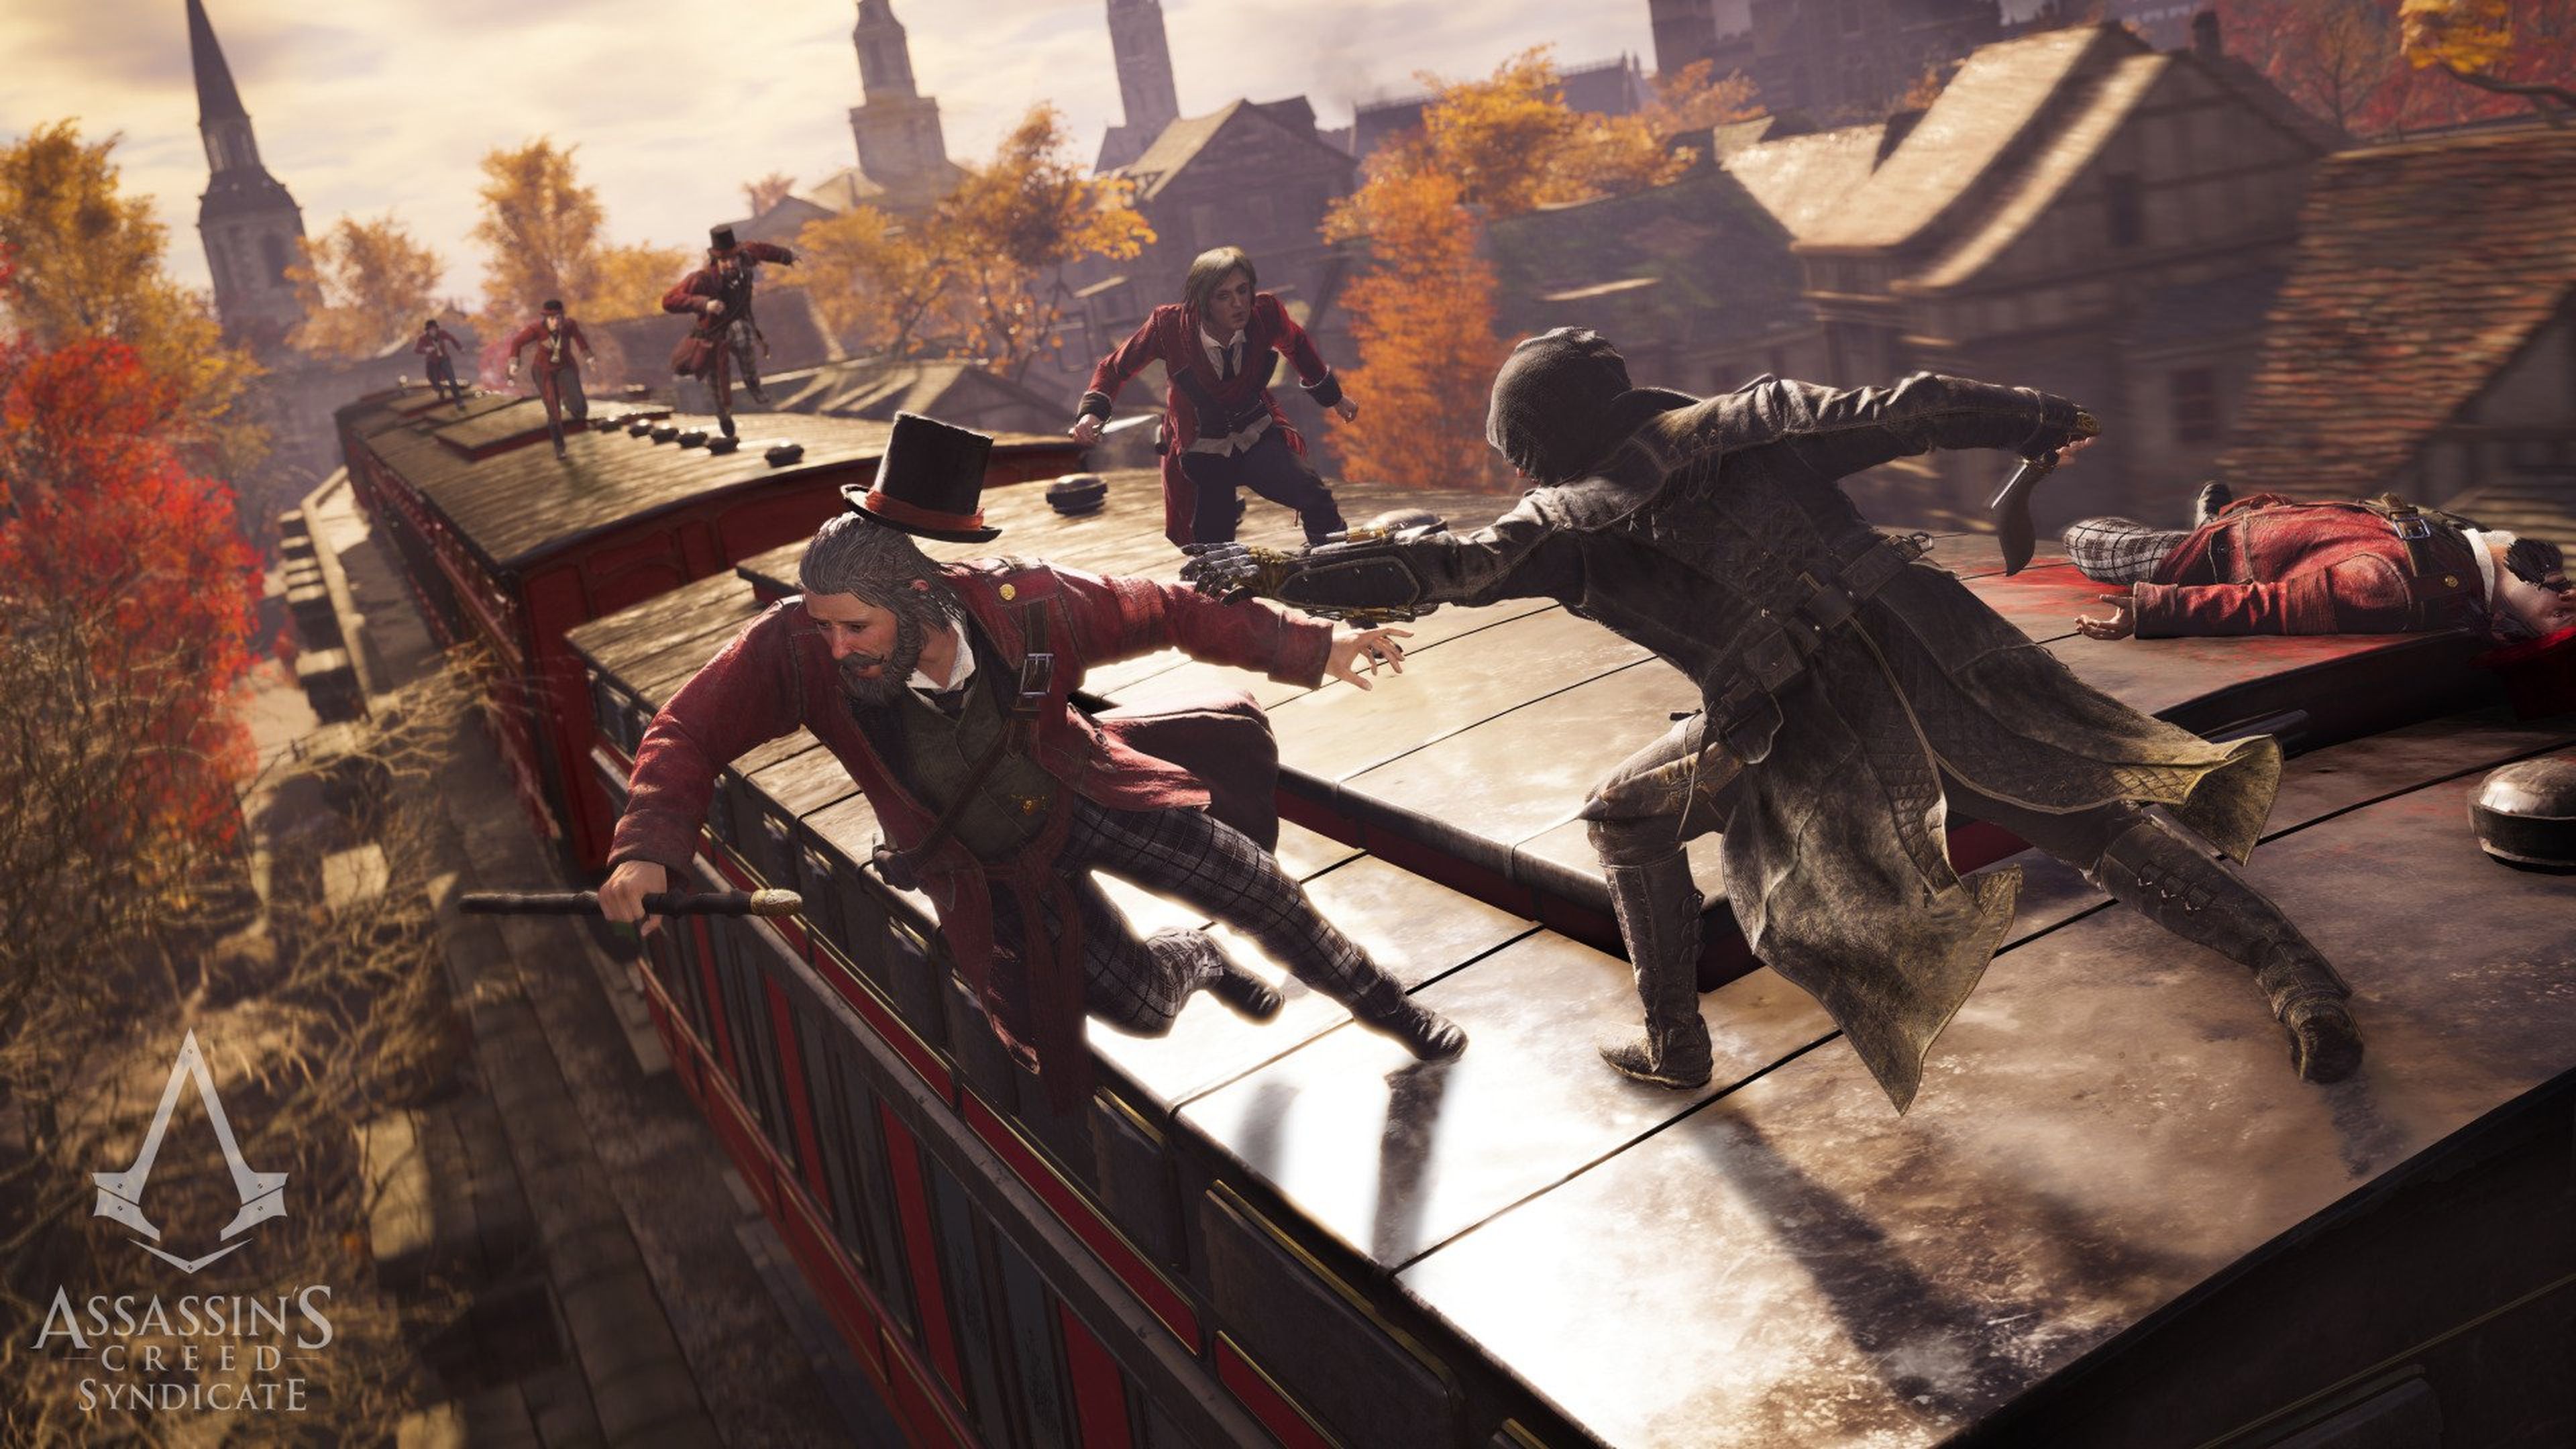 Assassin's Creed Syndicate, requisitos mínimos y recomendados en PC